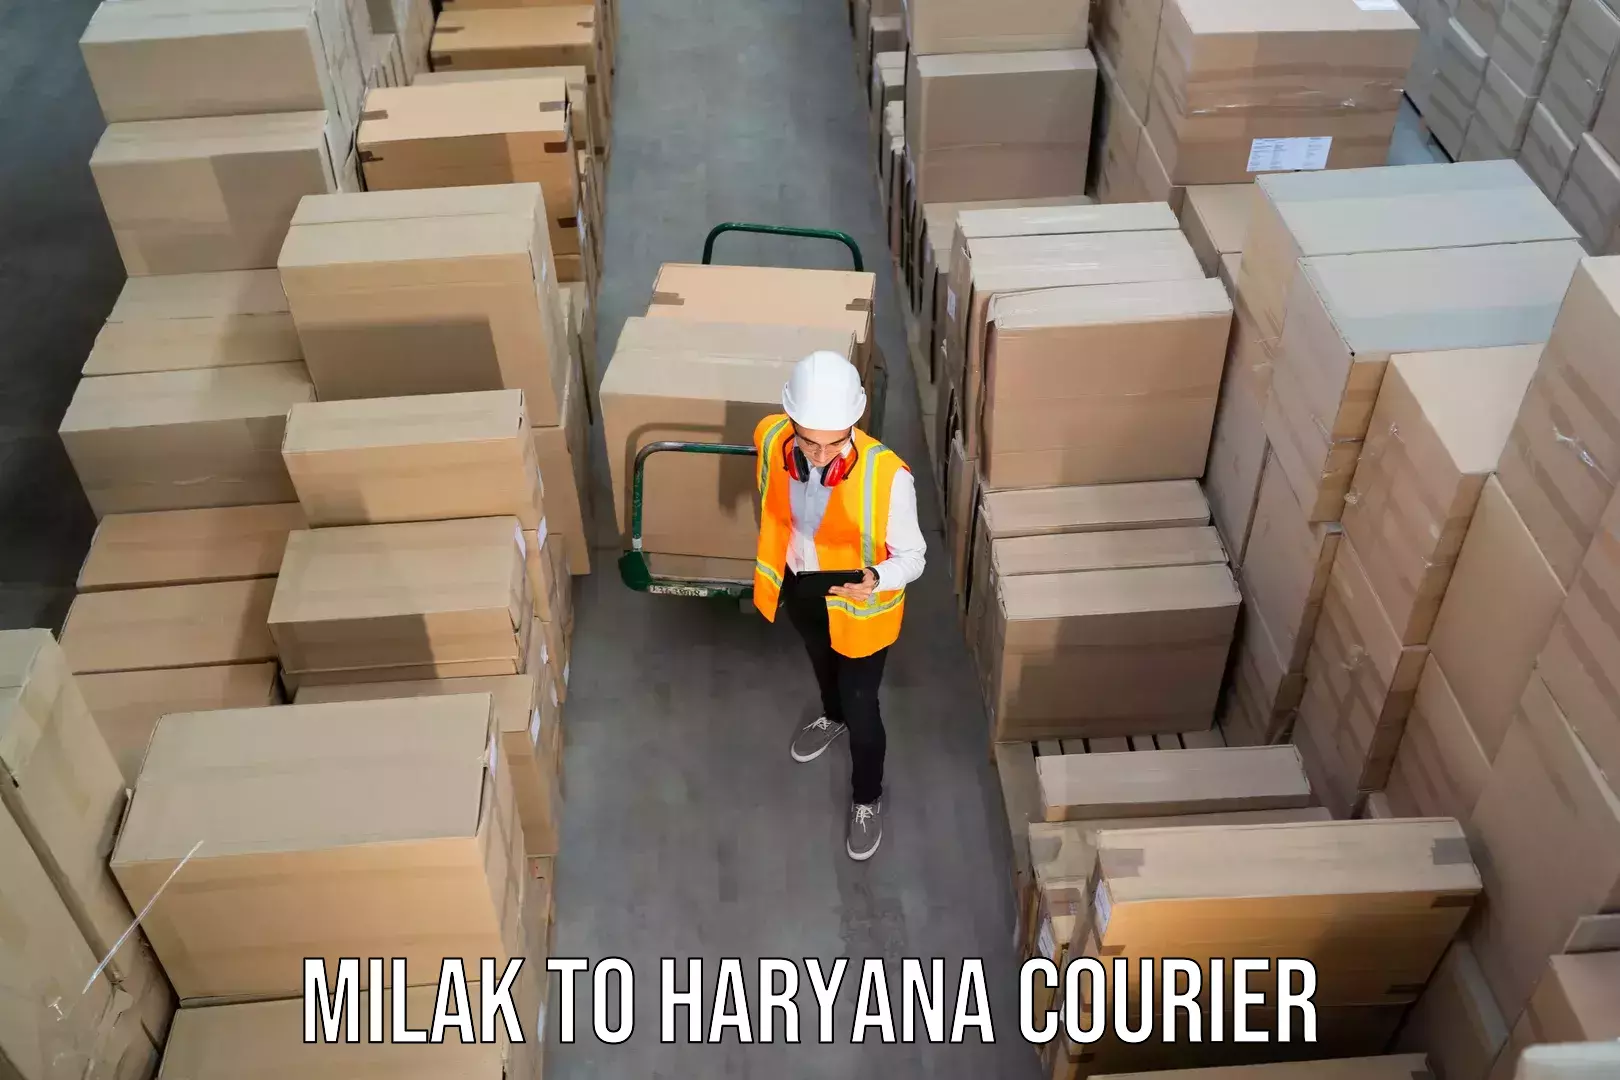 Courier rate comparison Milak to IIIT Sonepat